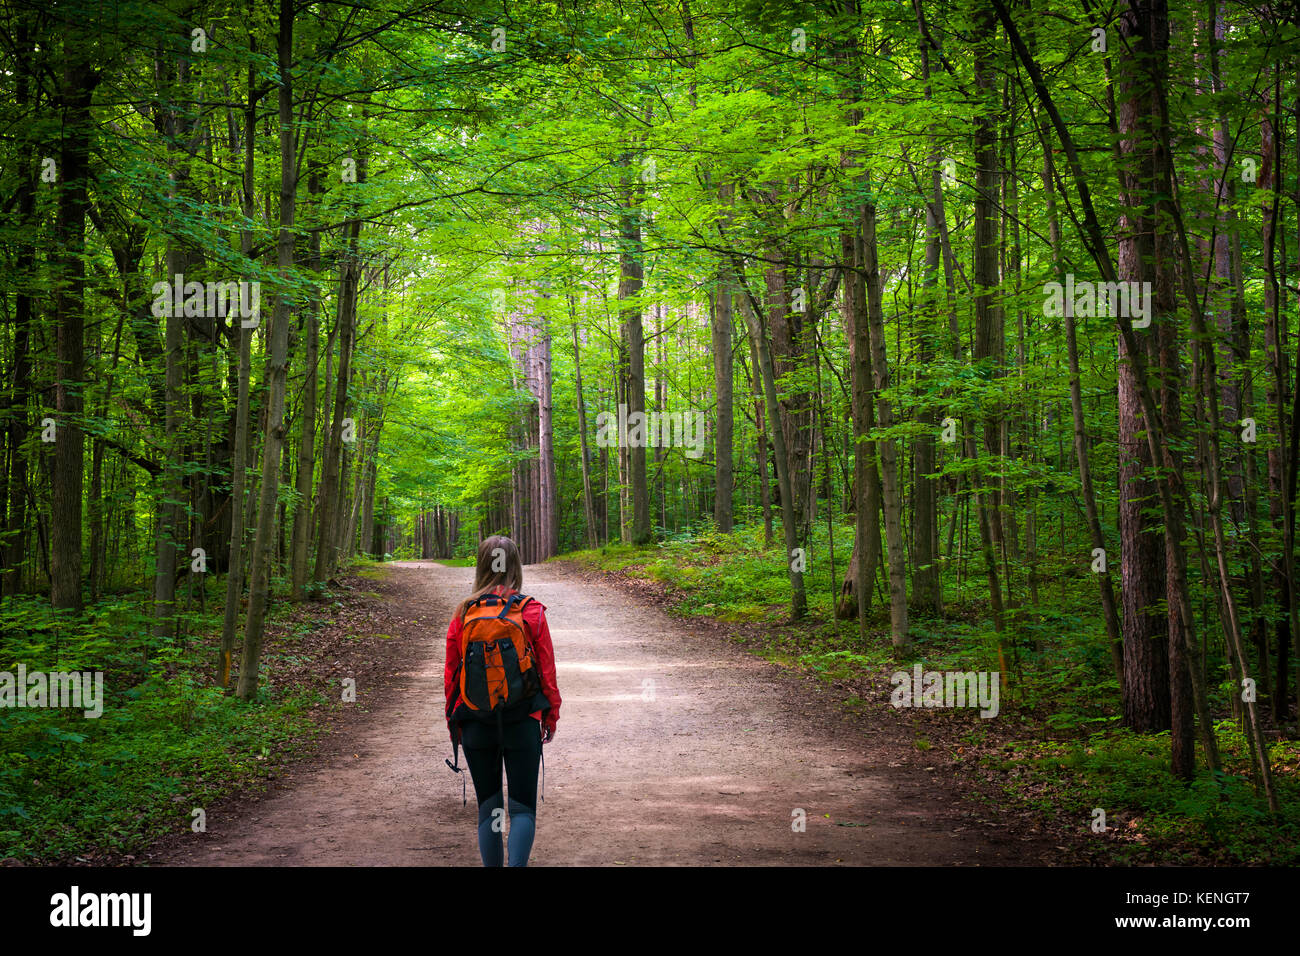 Junge Frau Wanderer mit Rucksack zu Fuß auf Wanderweg in grün sommer wald. Hilton fällt Conservation Area, Ontario, Kanada. Stockfoto